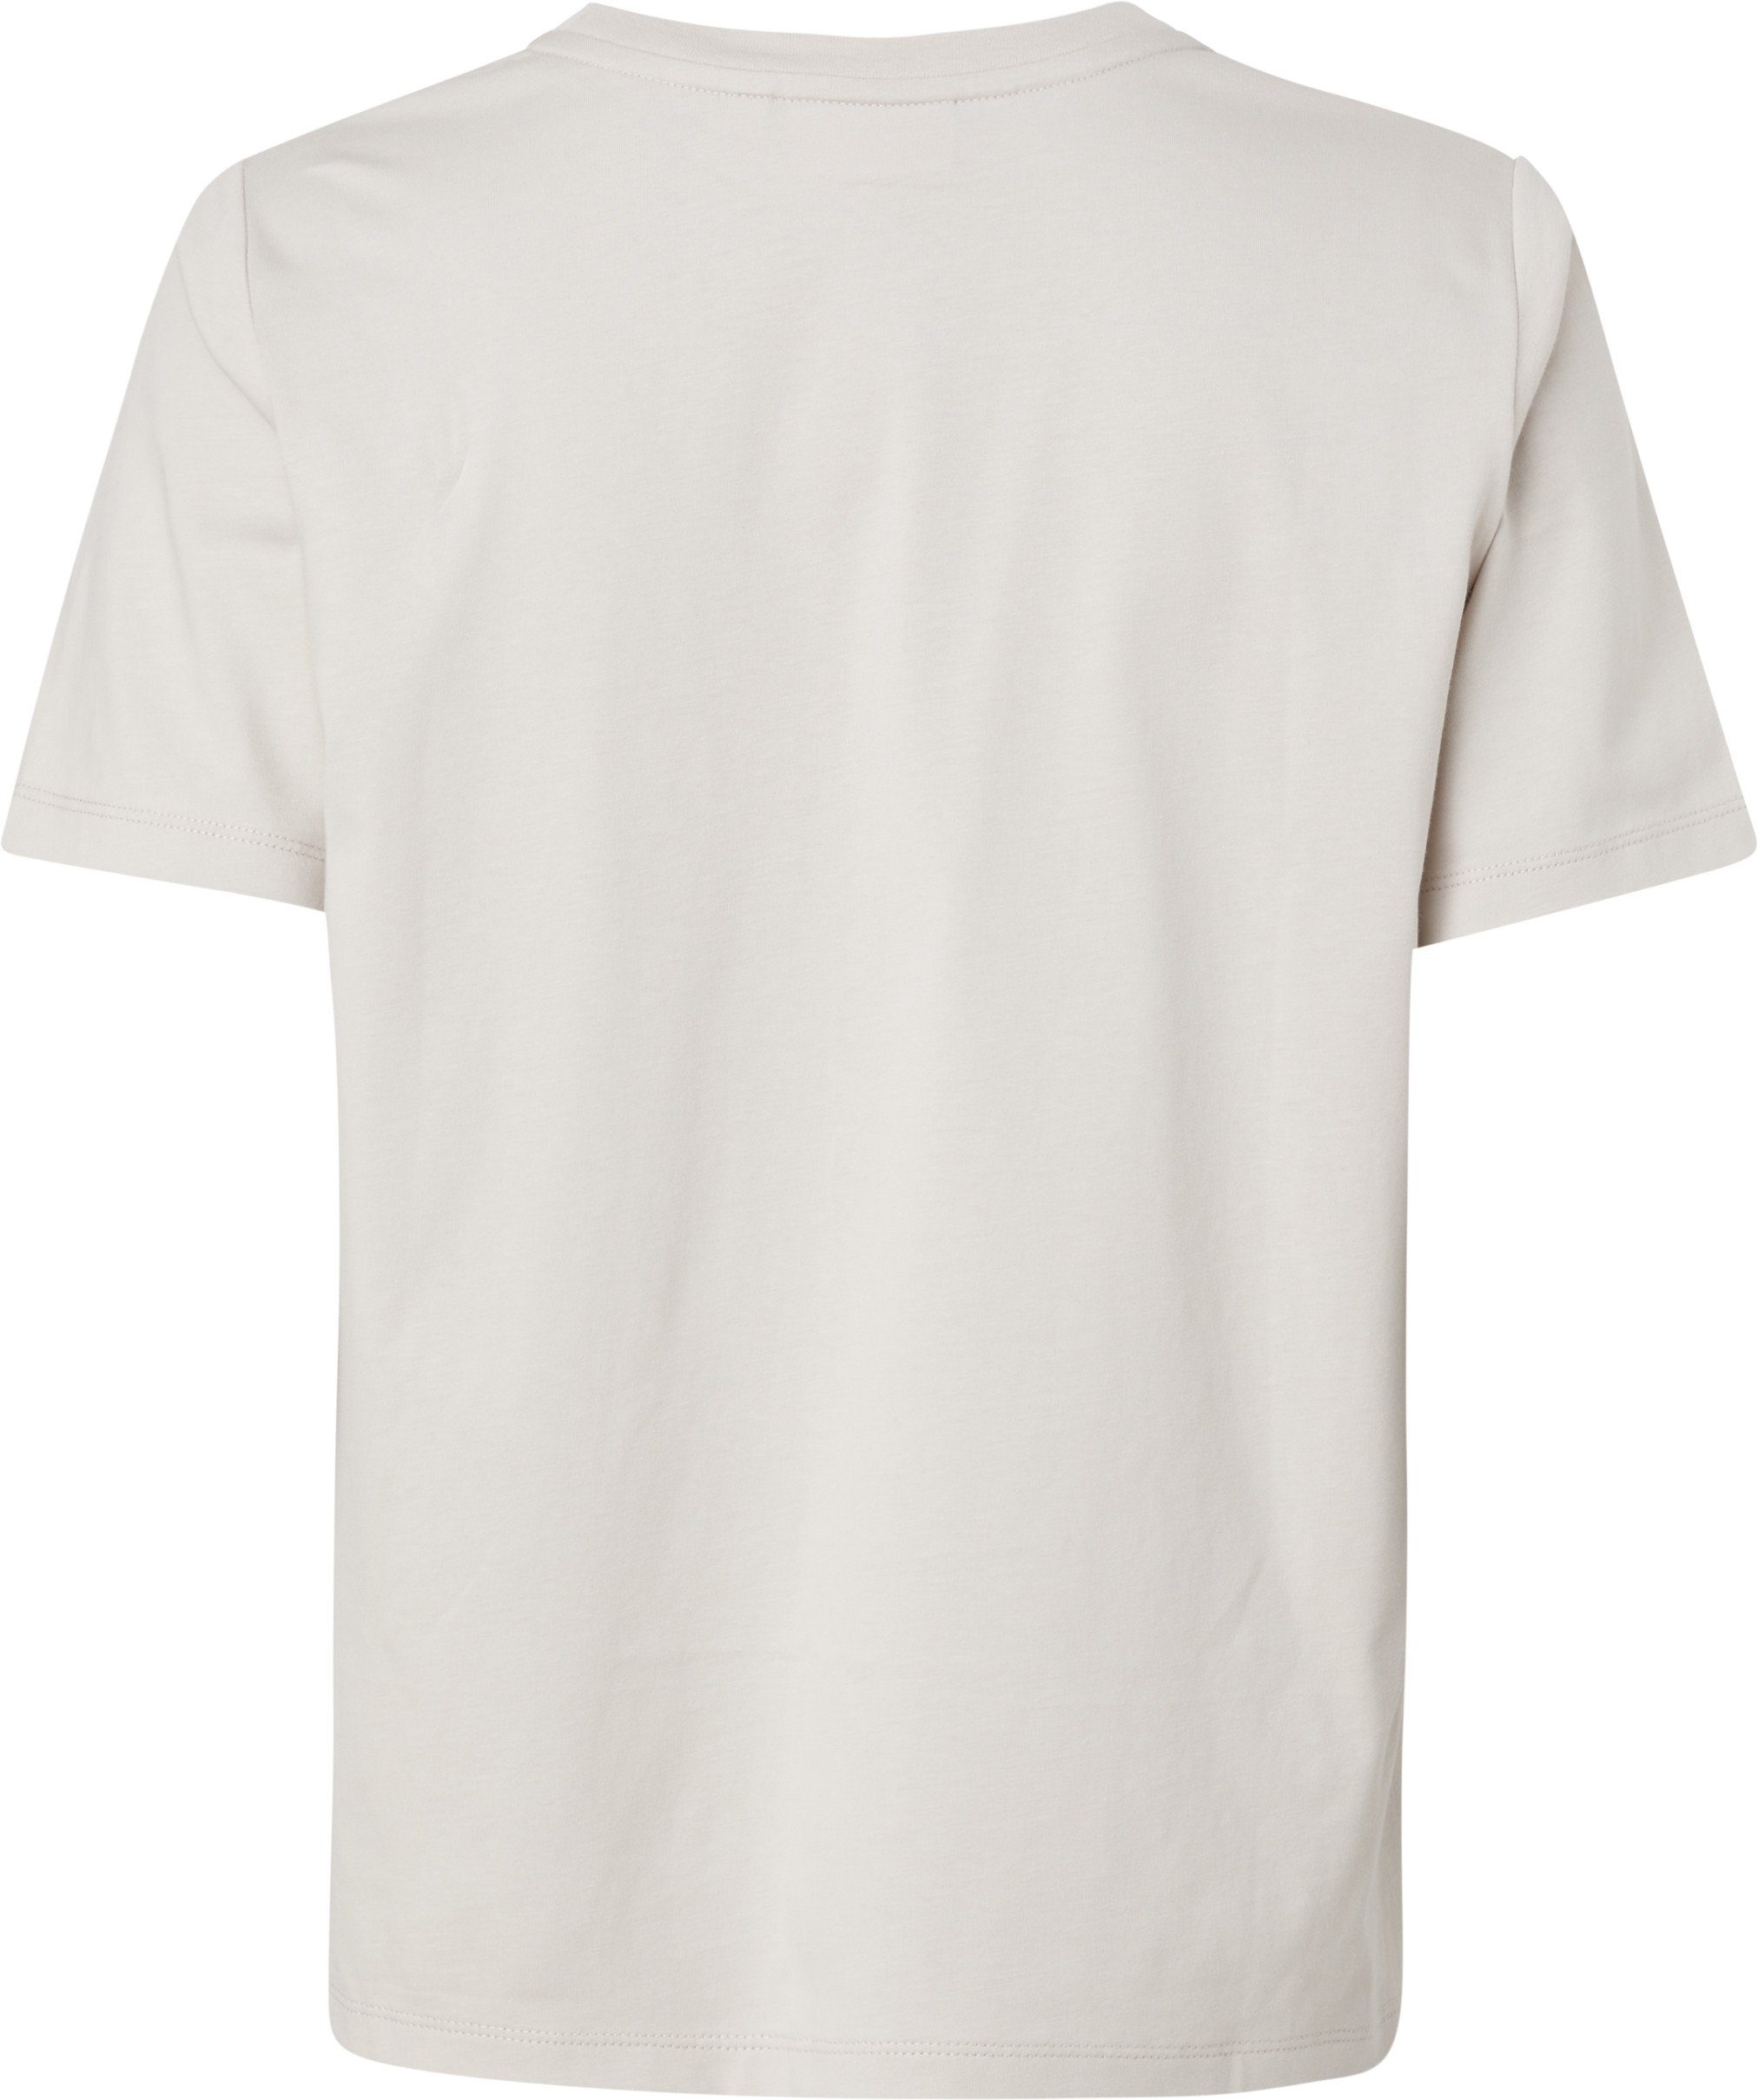 LOGO Silver T-SHIRT reiner Calvin aus Gray MICRO T-Shirt Klein Baumwolle